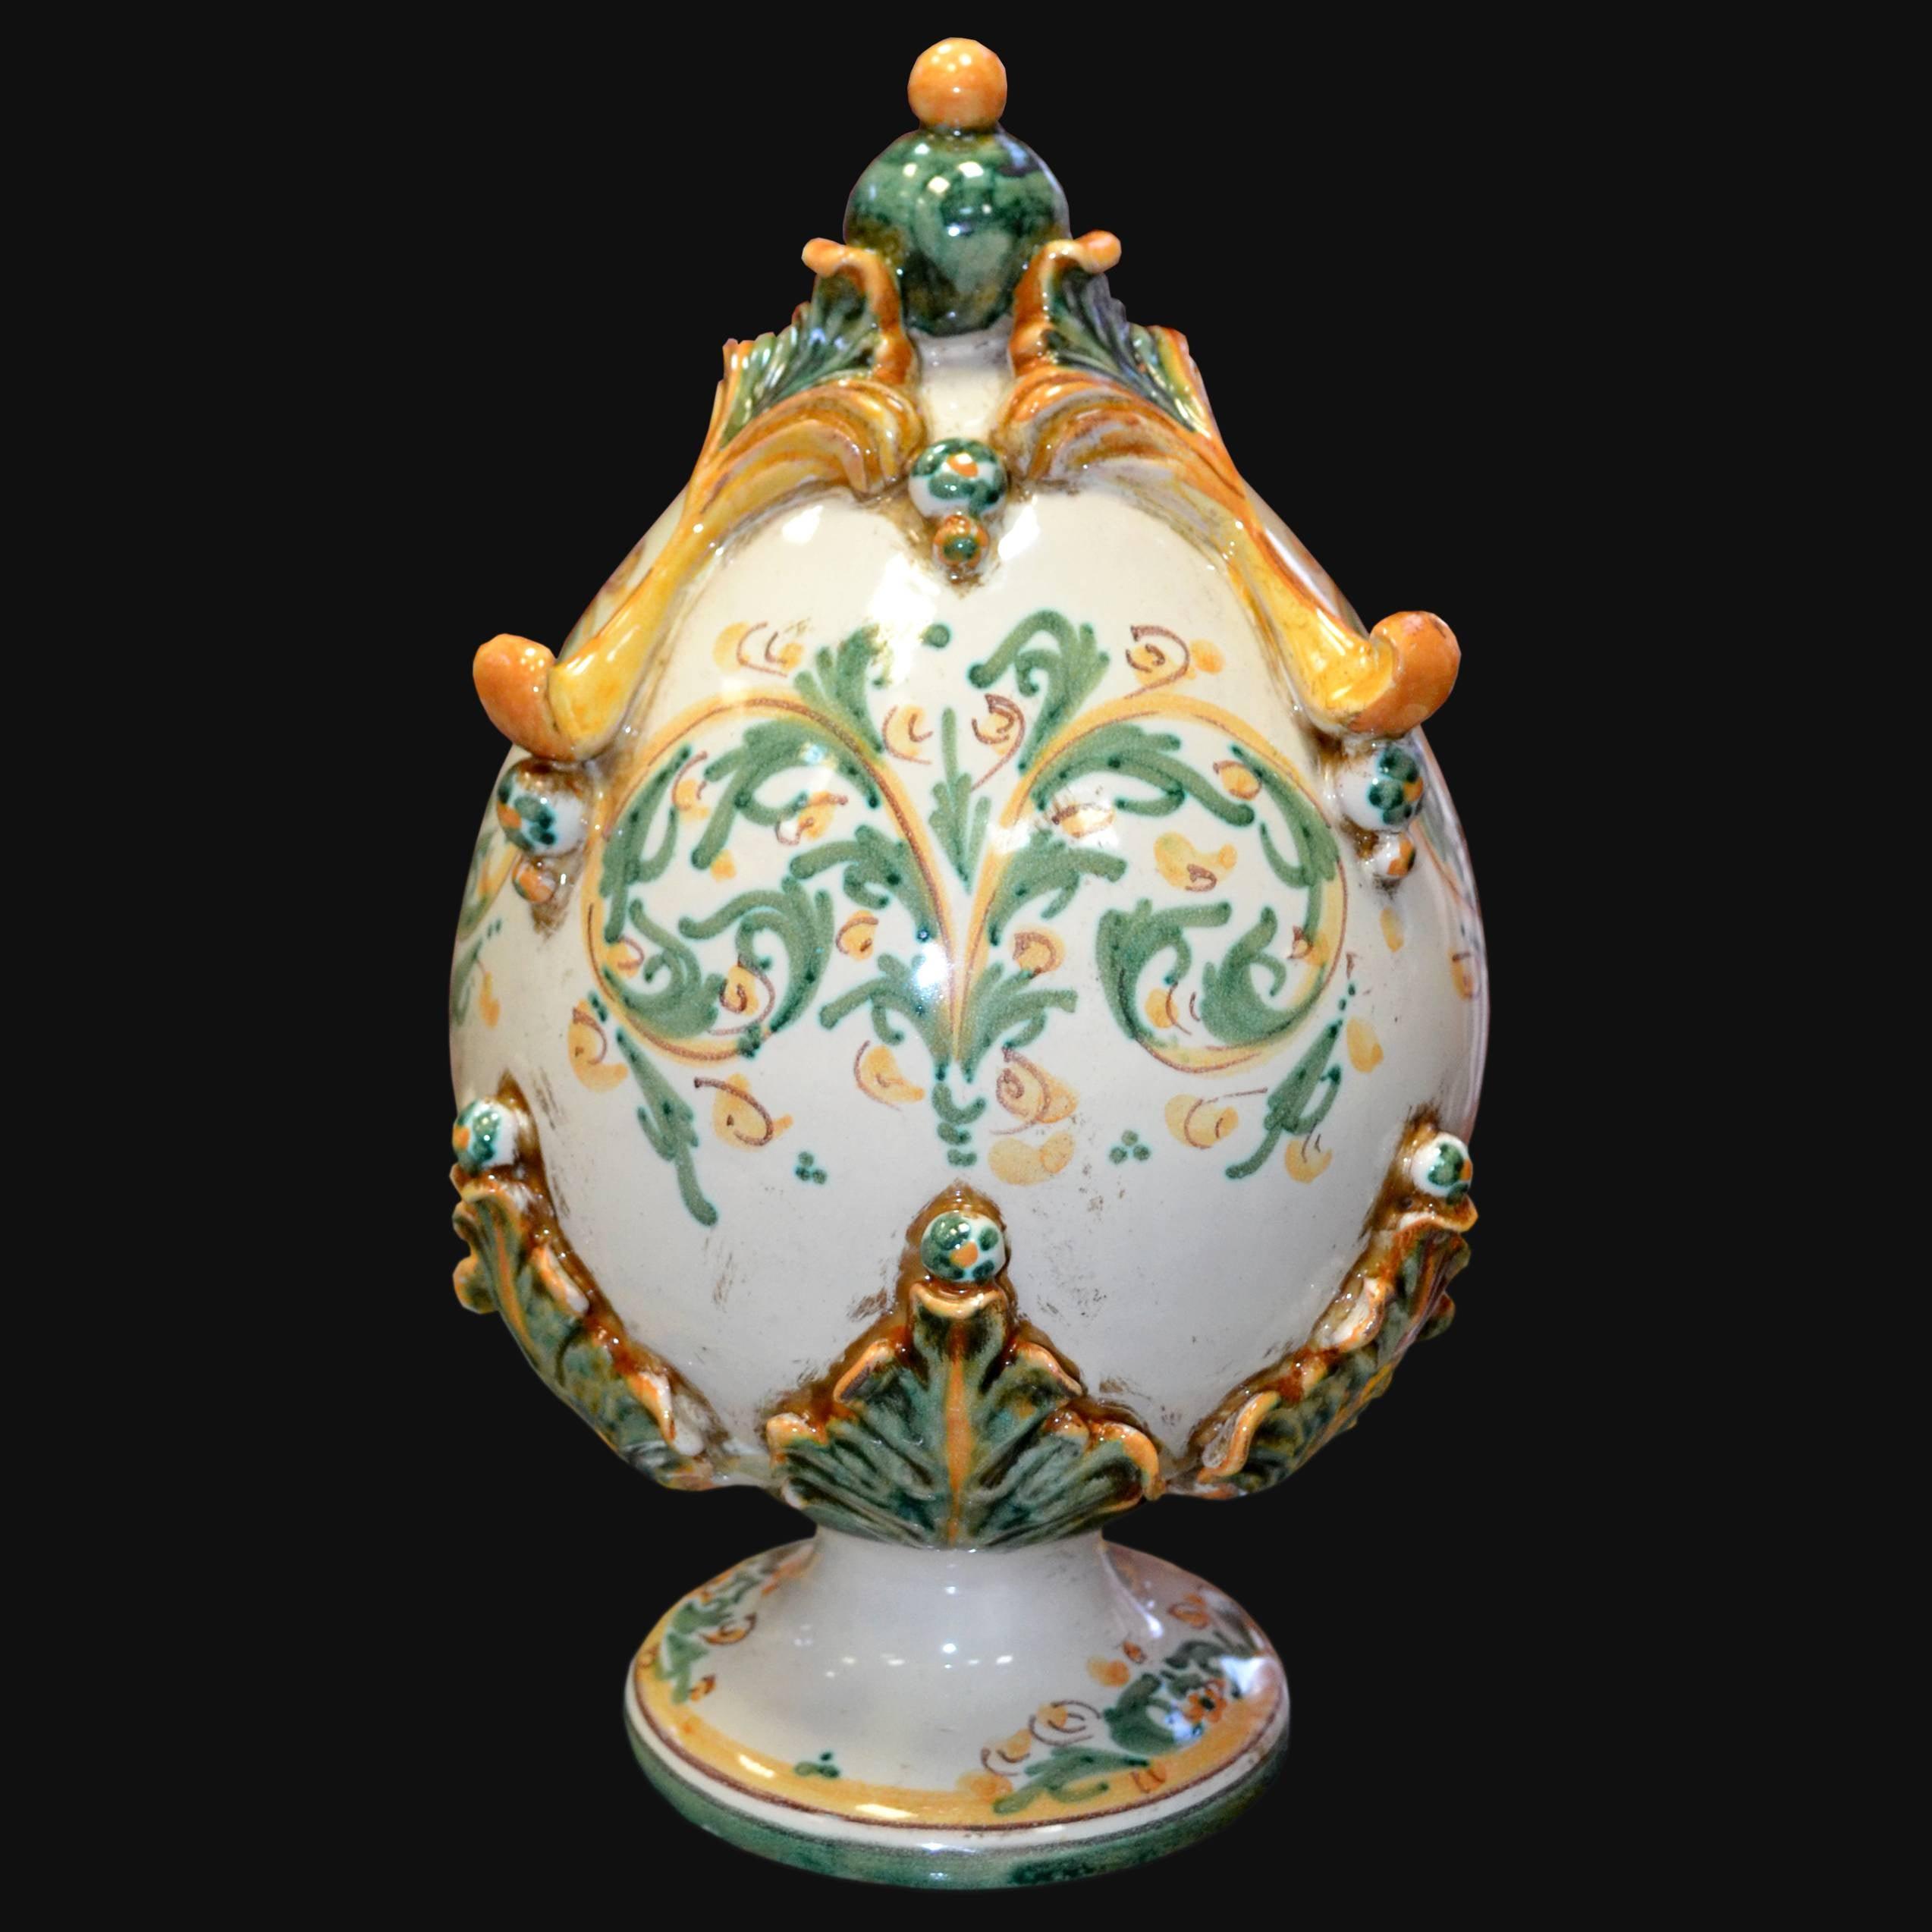 Uovo in ceramica h 25 plastico Sofia verde/arancio - Ceramiche di Caltagirone - Ceramiche di Caltagirone Sofia